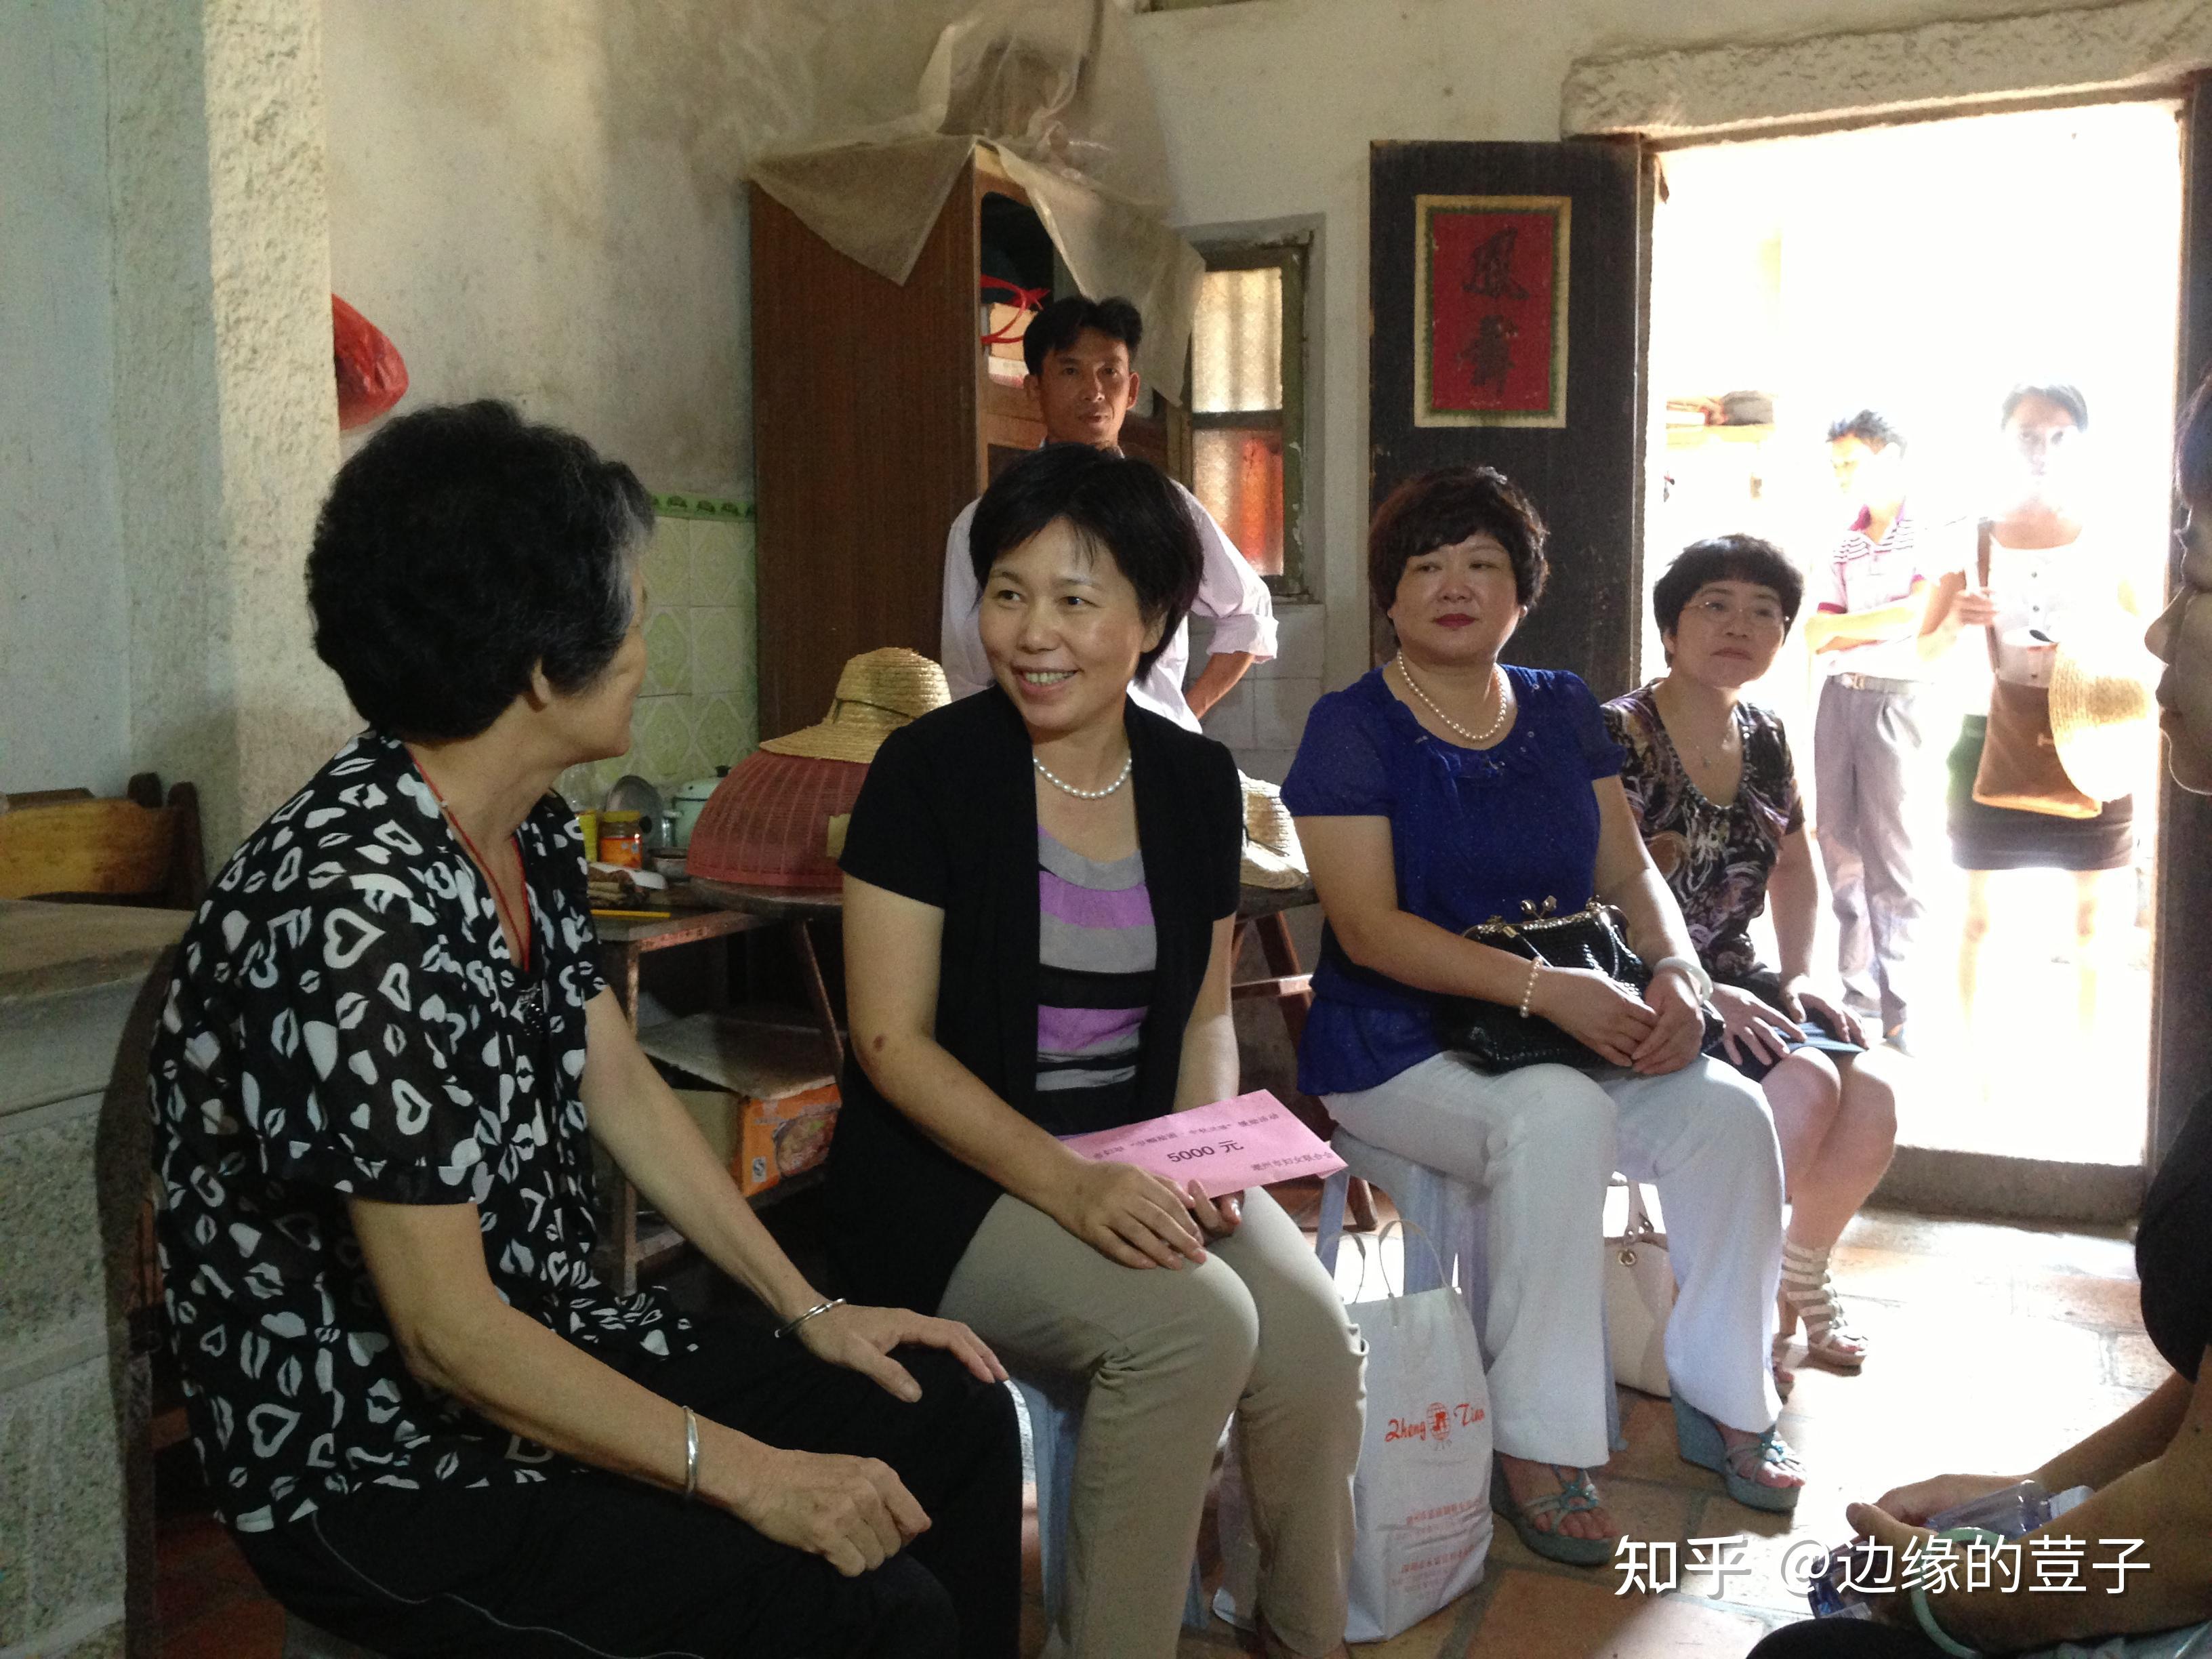 衡阳市妇联主席周红玲在石塘村妇联执委会上强调 妇联改革让精准扶贫更有力量